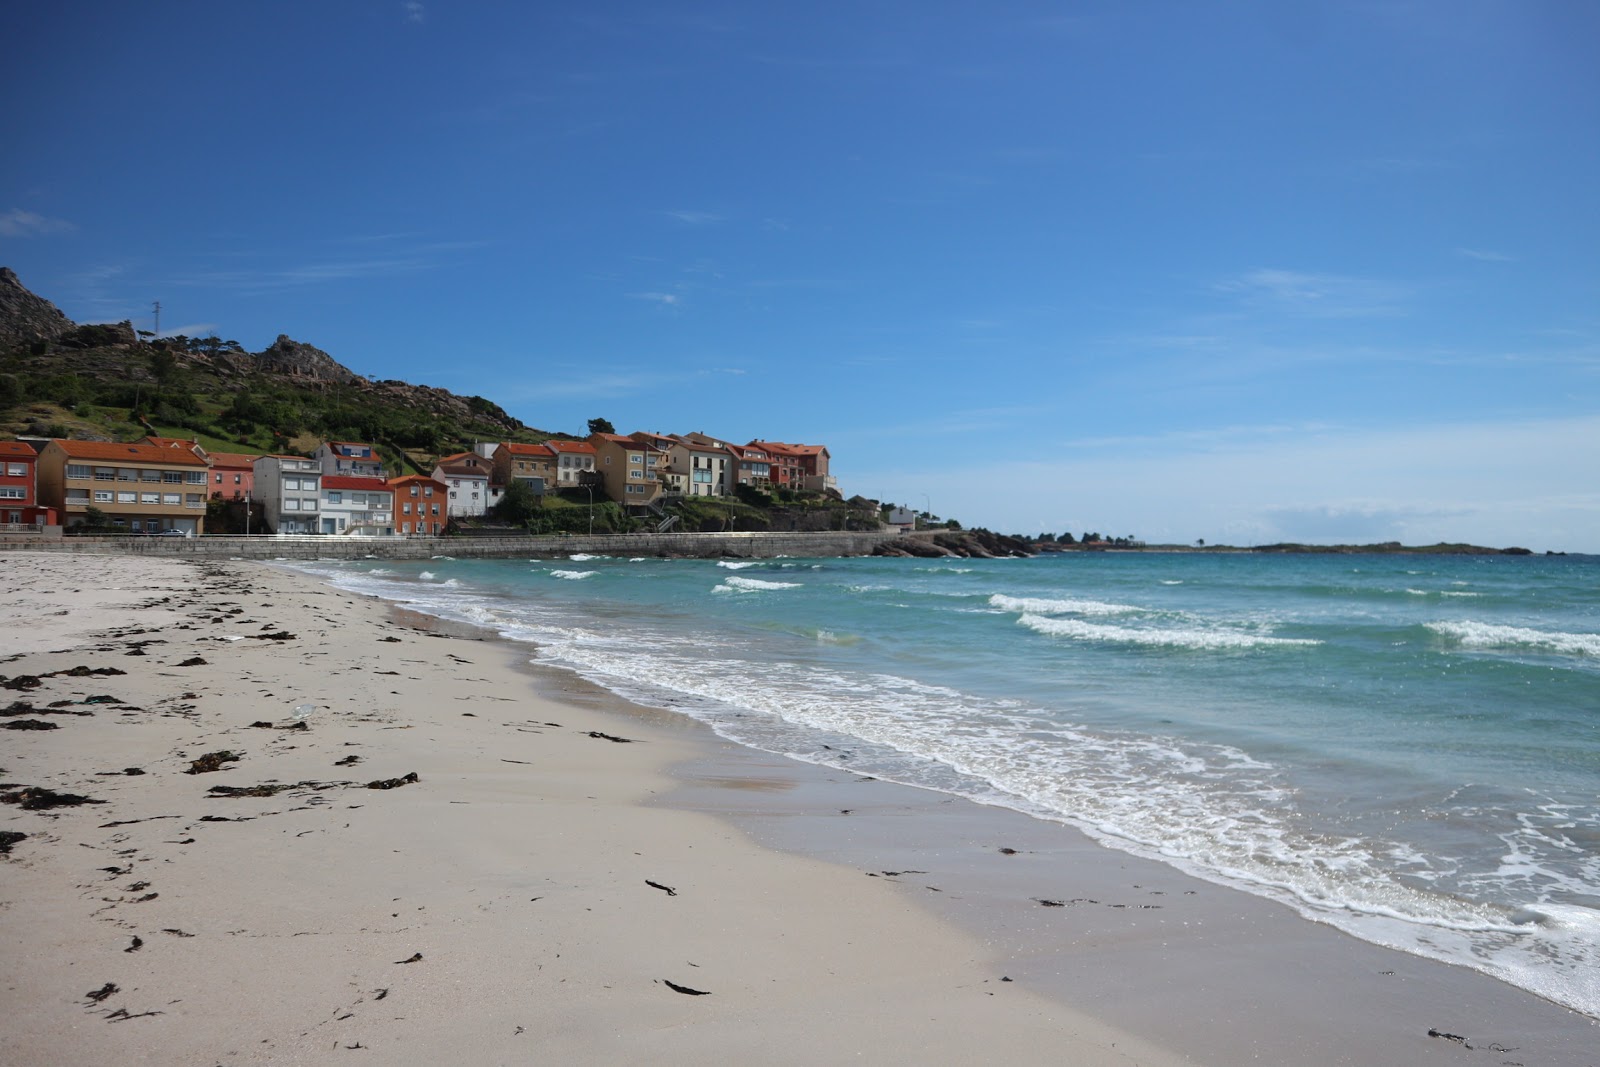 Praia do Pindo'in fotoğrafı beyaz ince kum yüzey ile